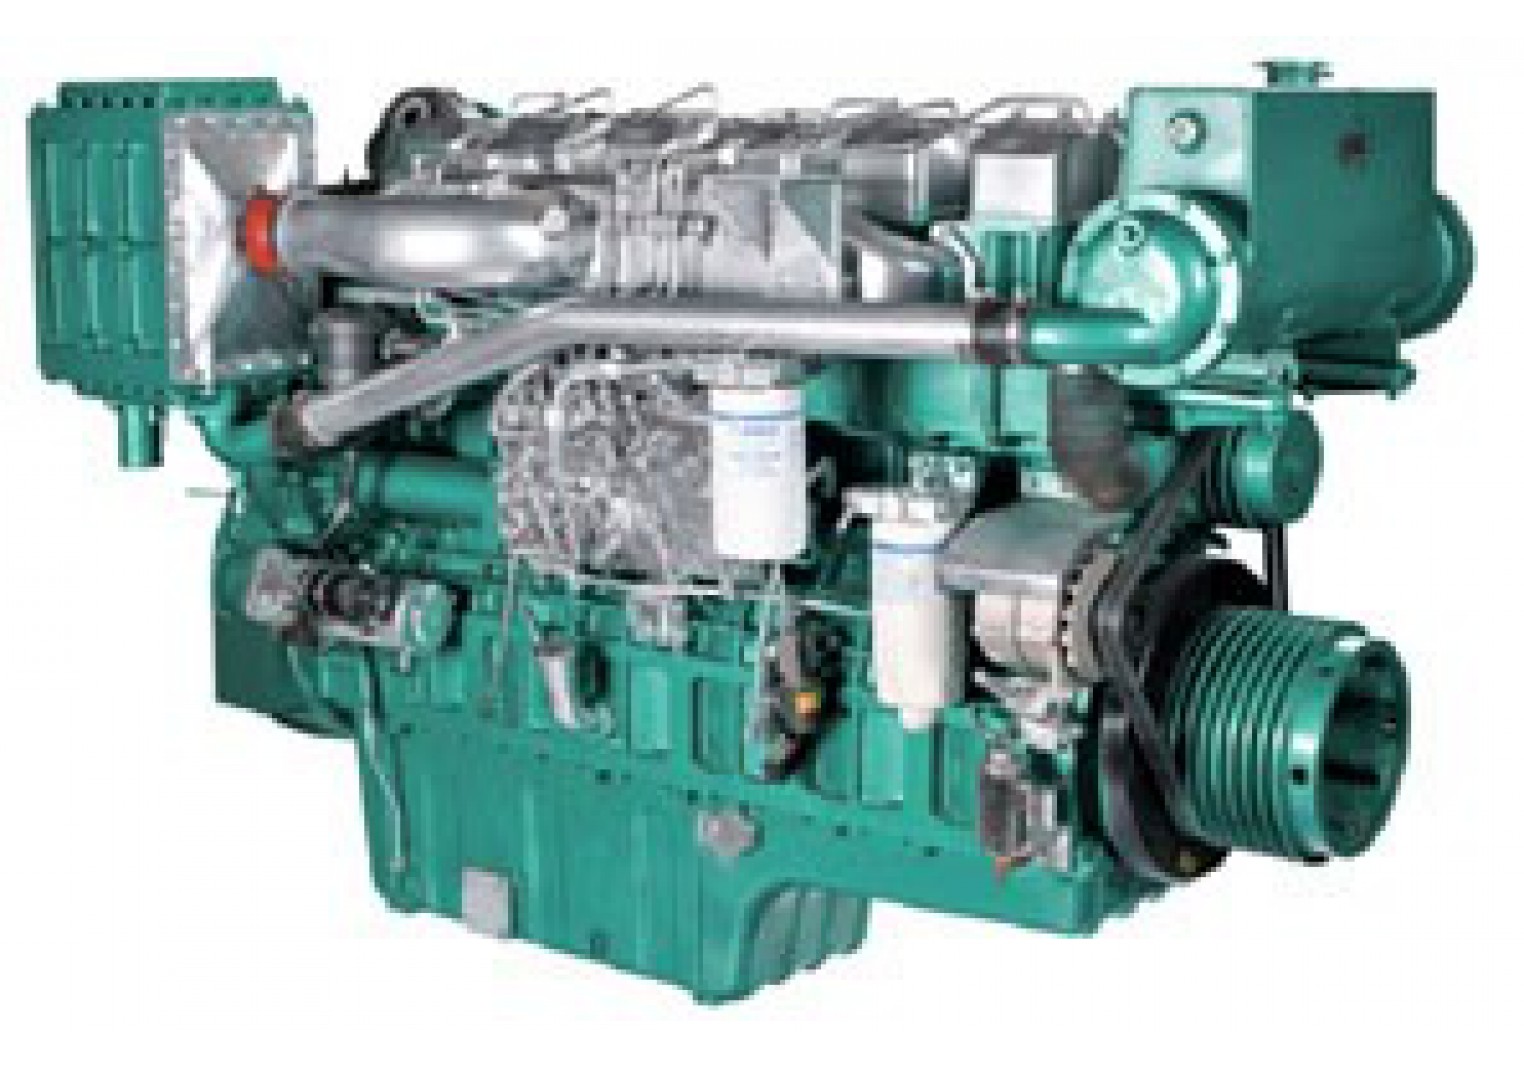 Yuchai Marine Diesel Engine YC6T410C